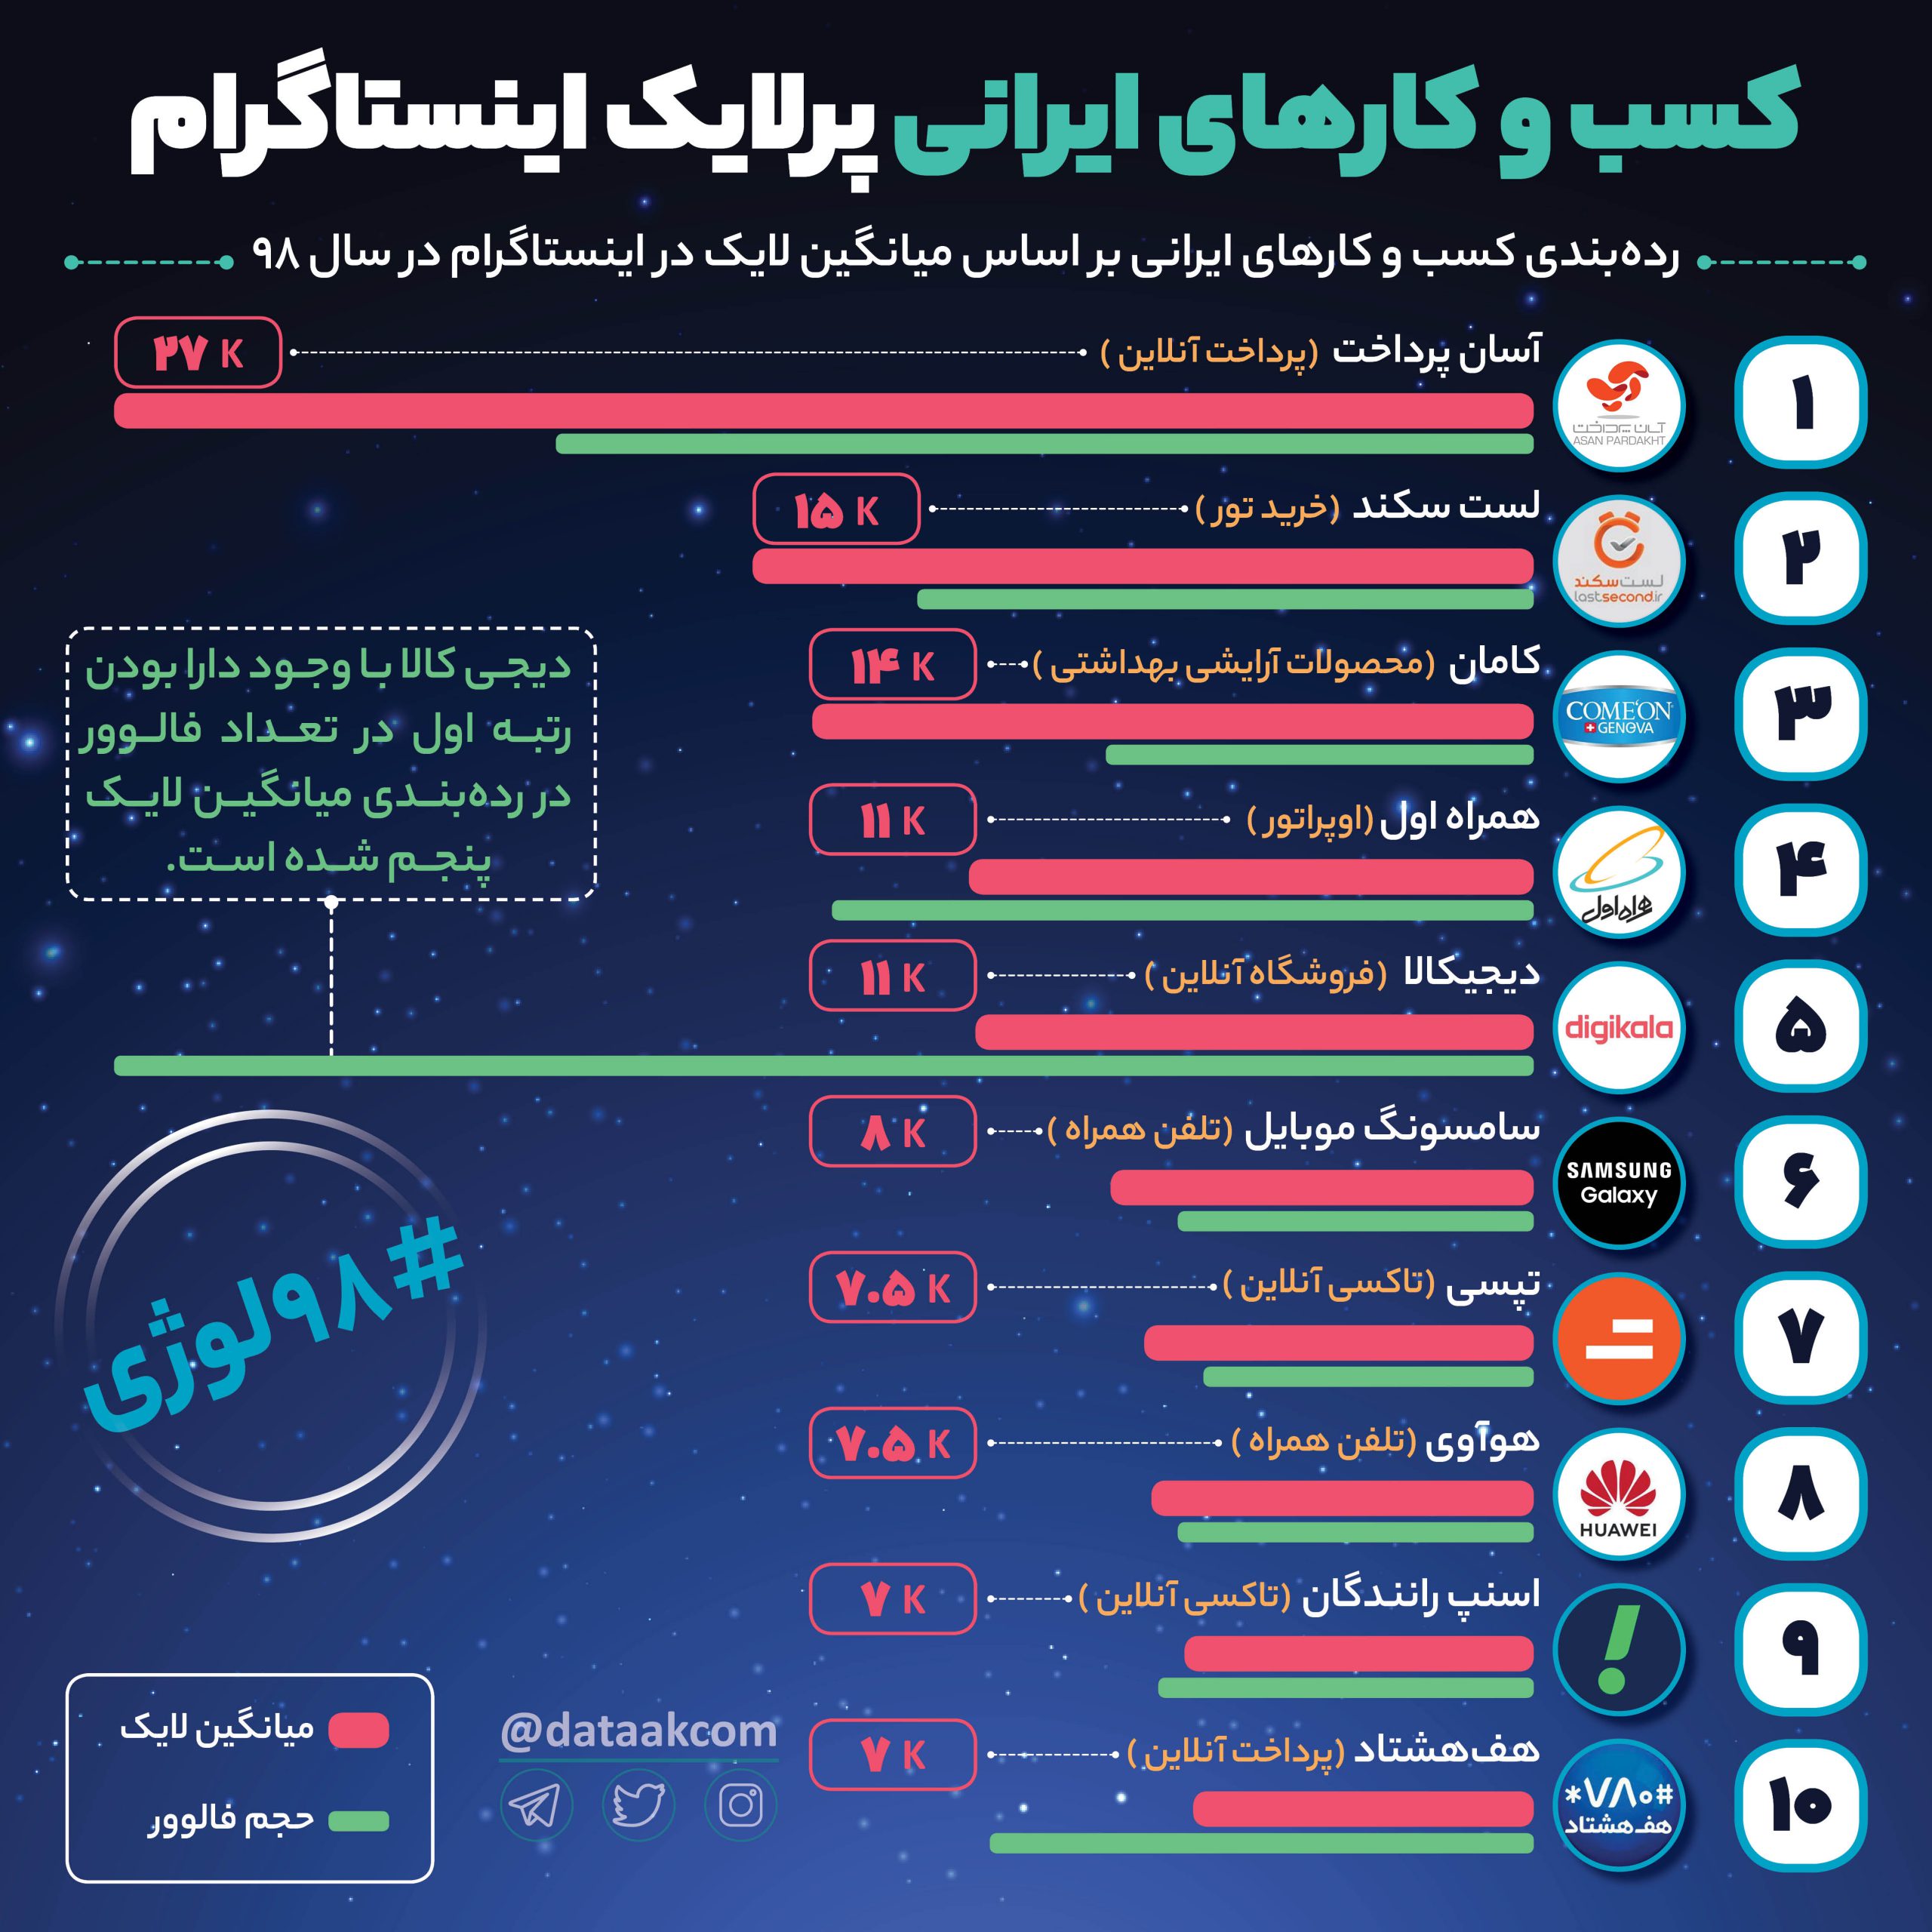 پرمخاطب ترین کسب و کارهای ایران